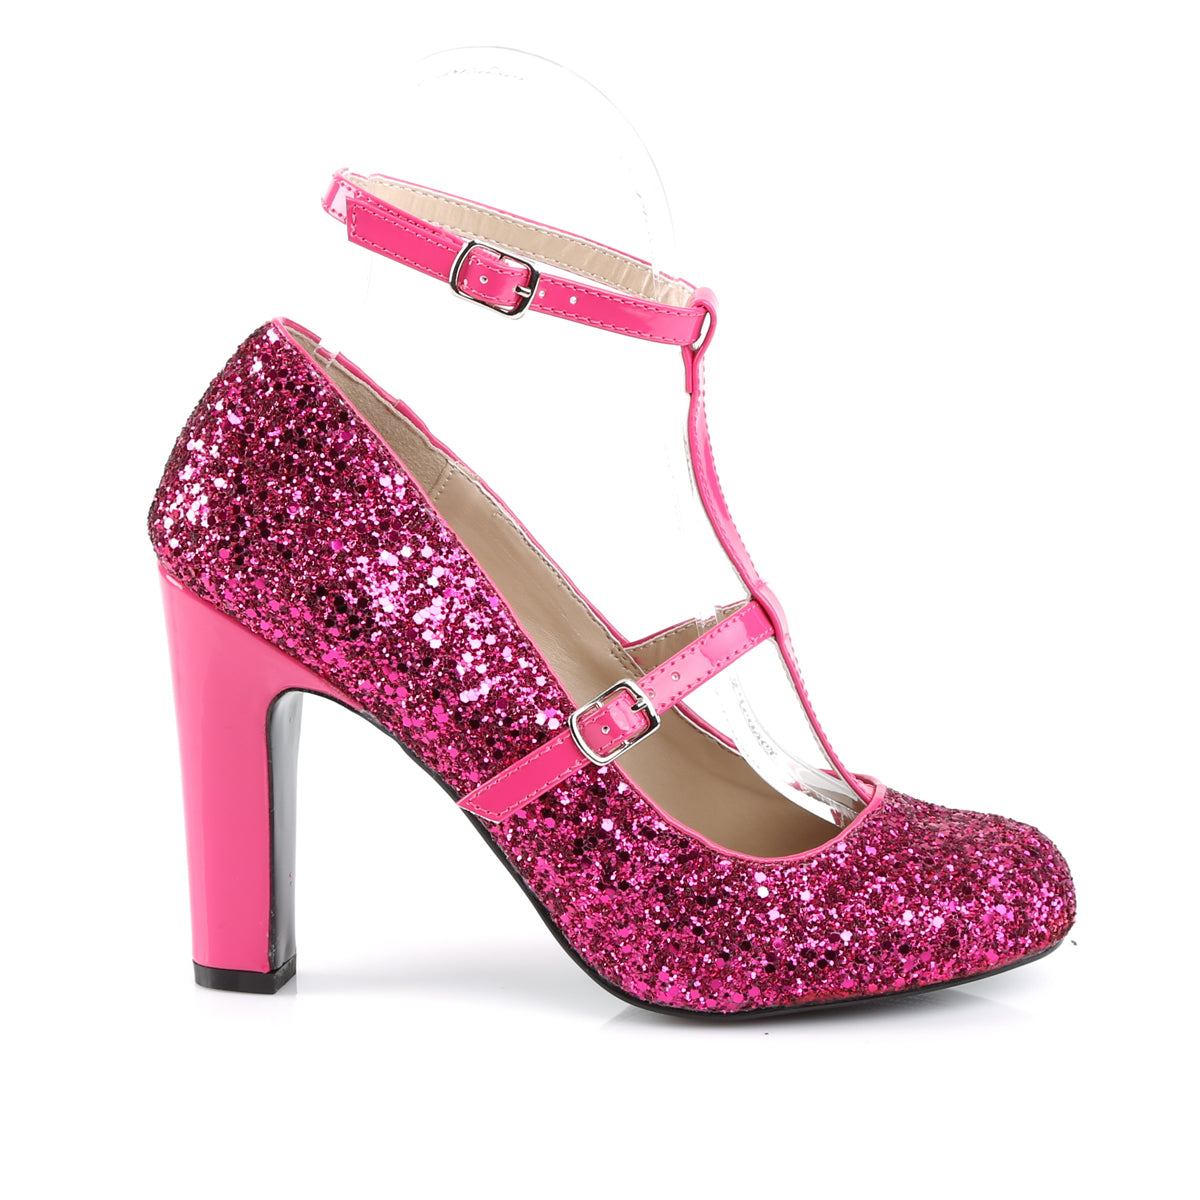 Pleaser Pink Label Womens Pumps QUEEN-01 H. Pink Glitter-Pat